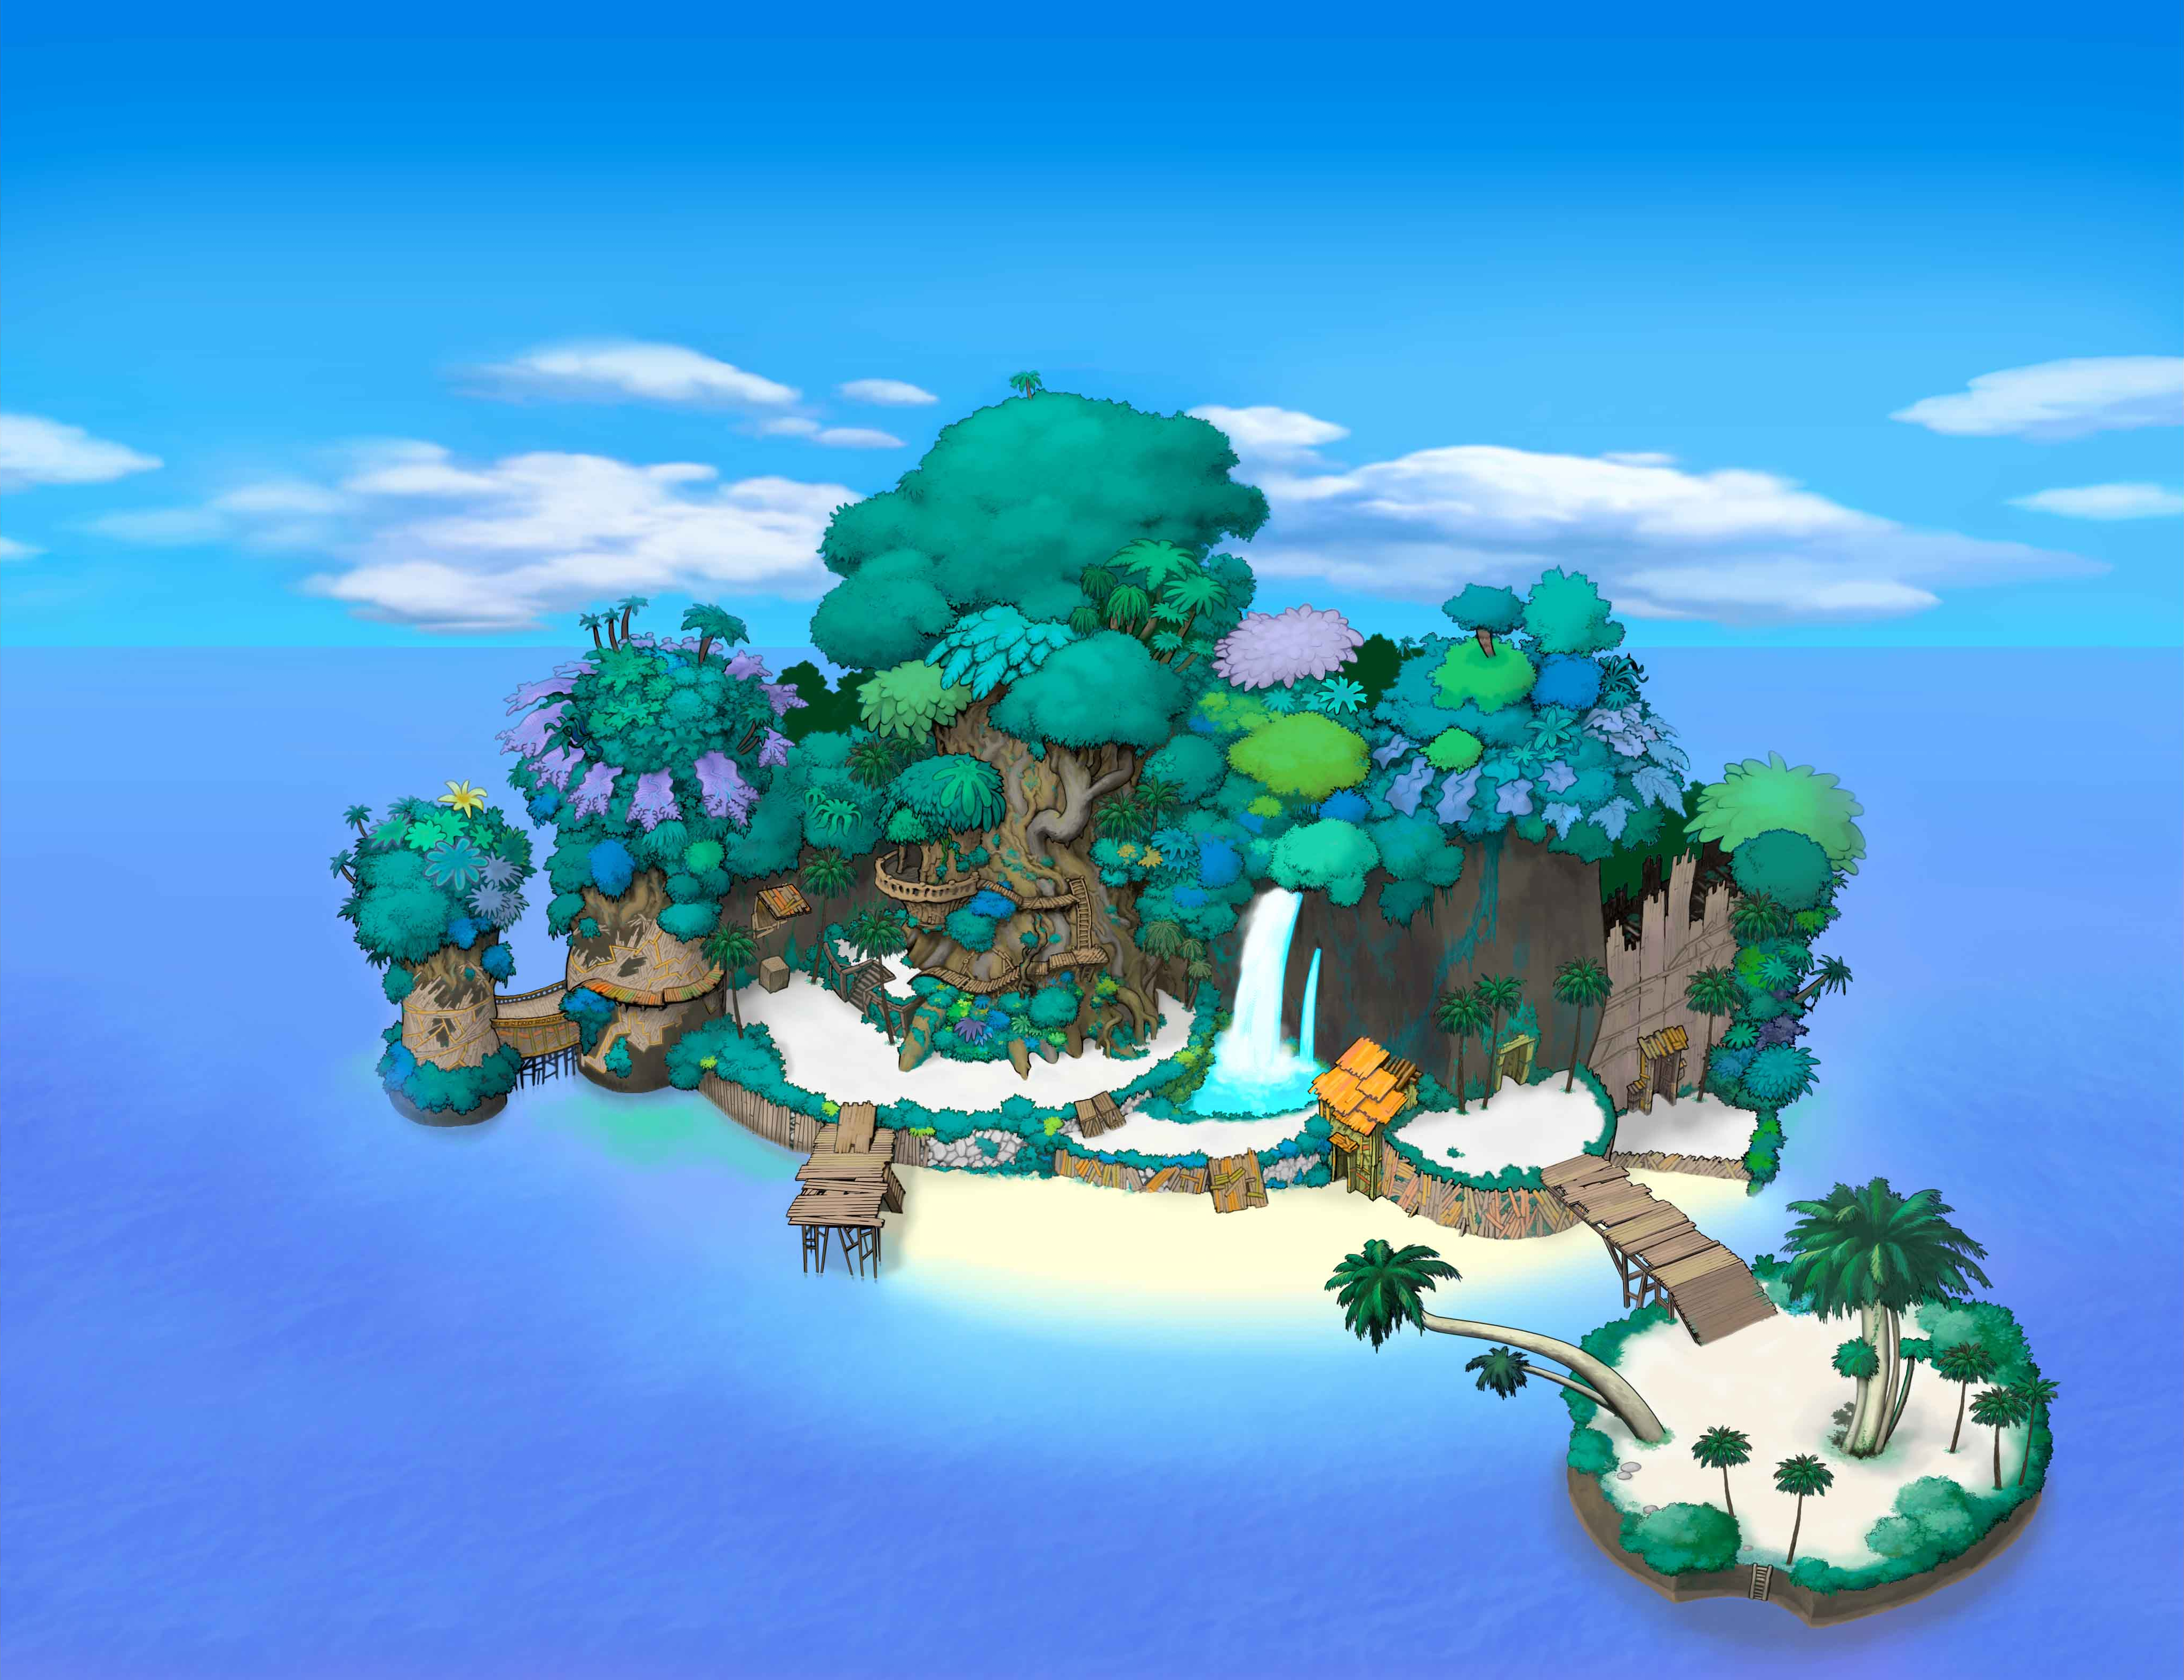 Animeverse island. Kingdom Hearts Destiny Island. Сказочный остров. Остров мультяшный. Остров загадок.